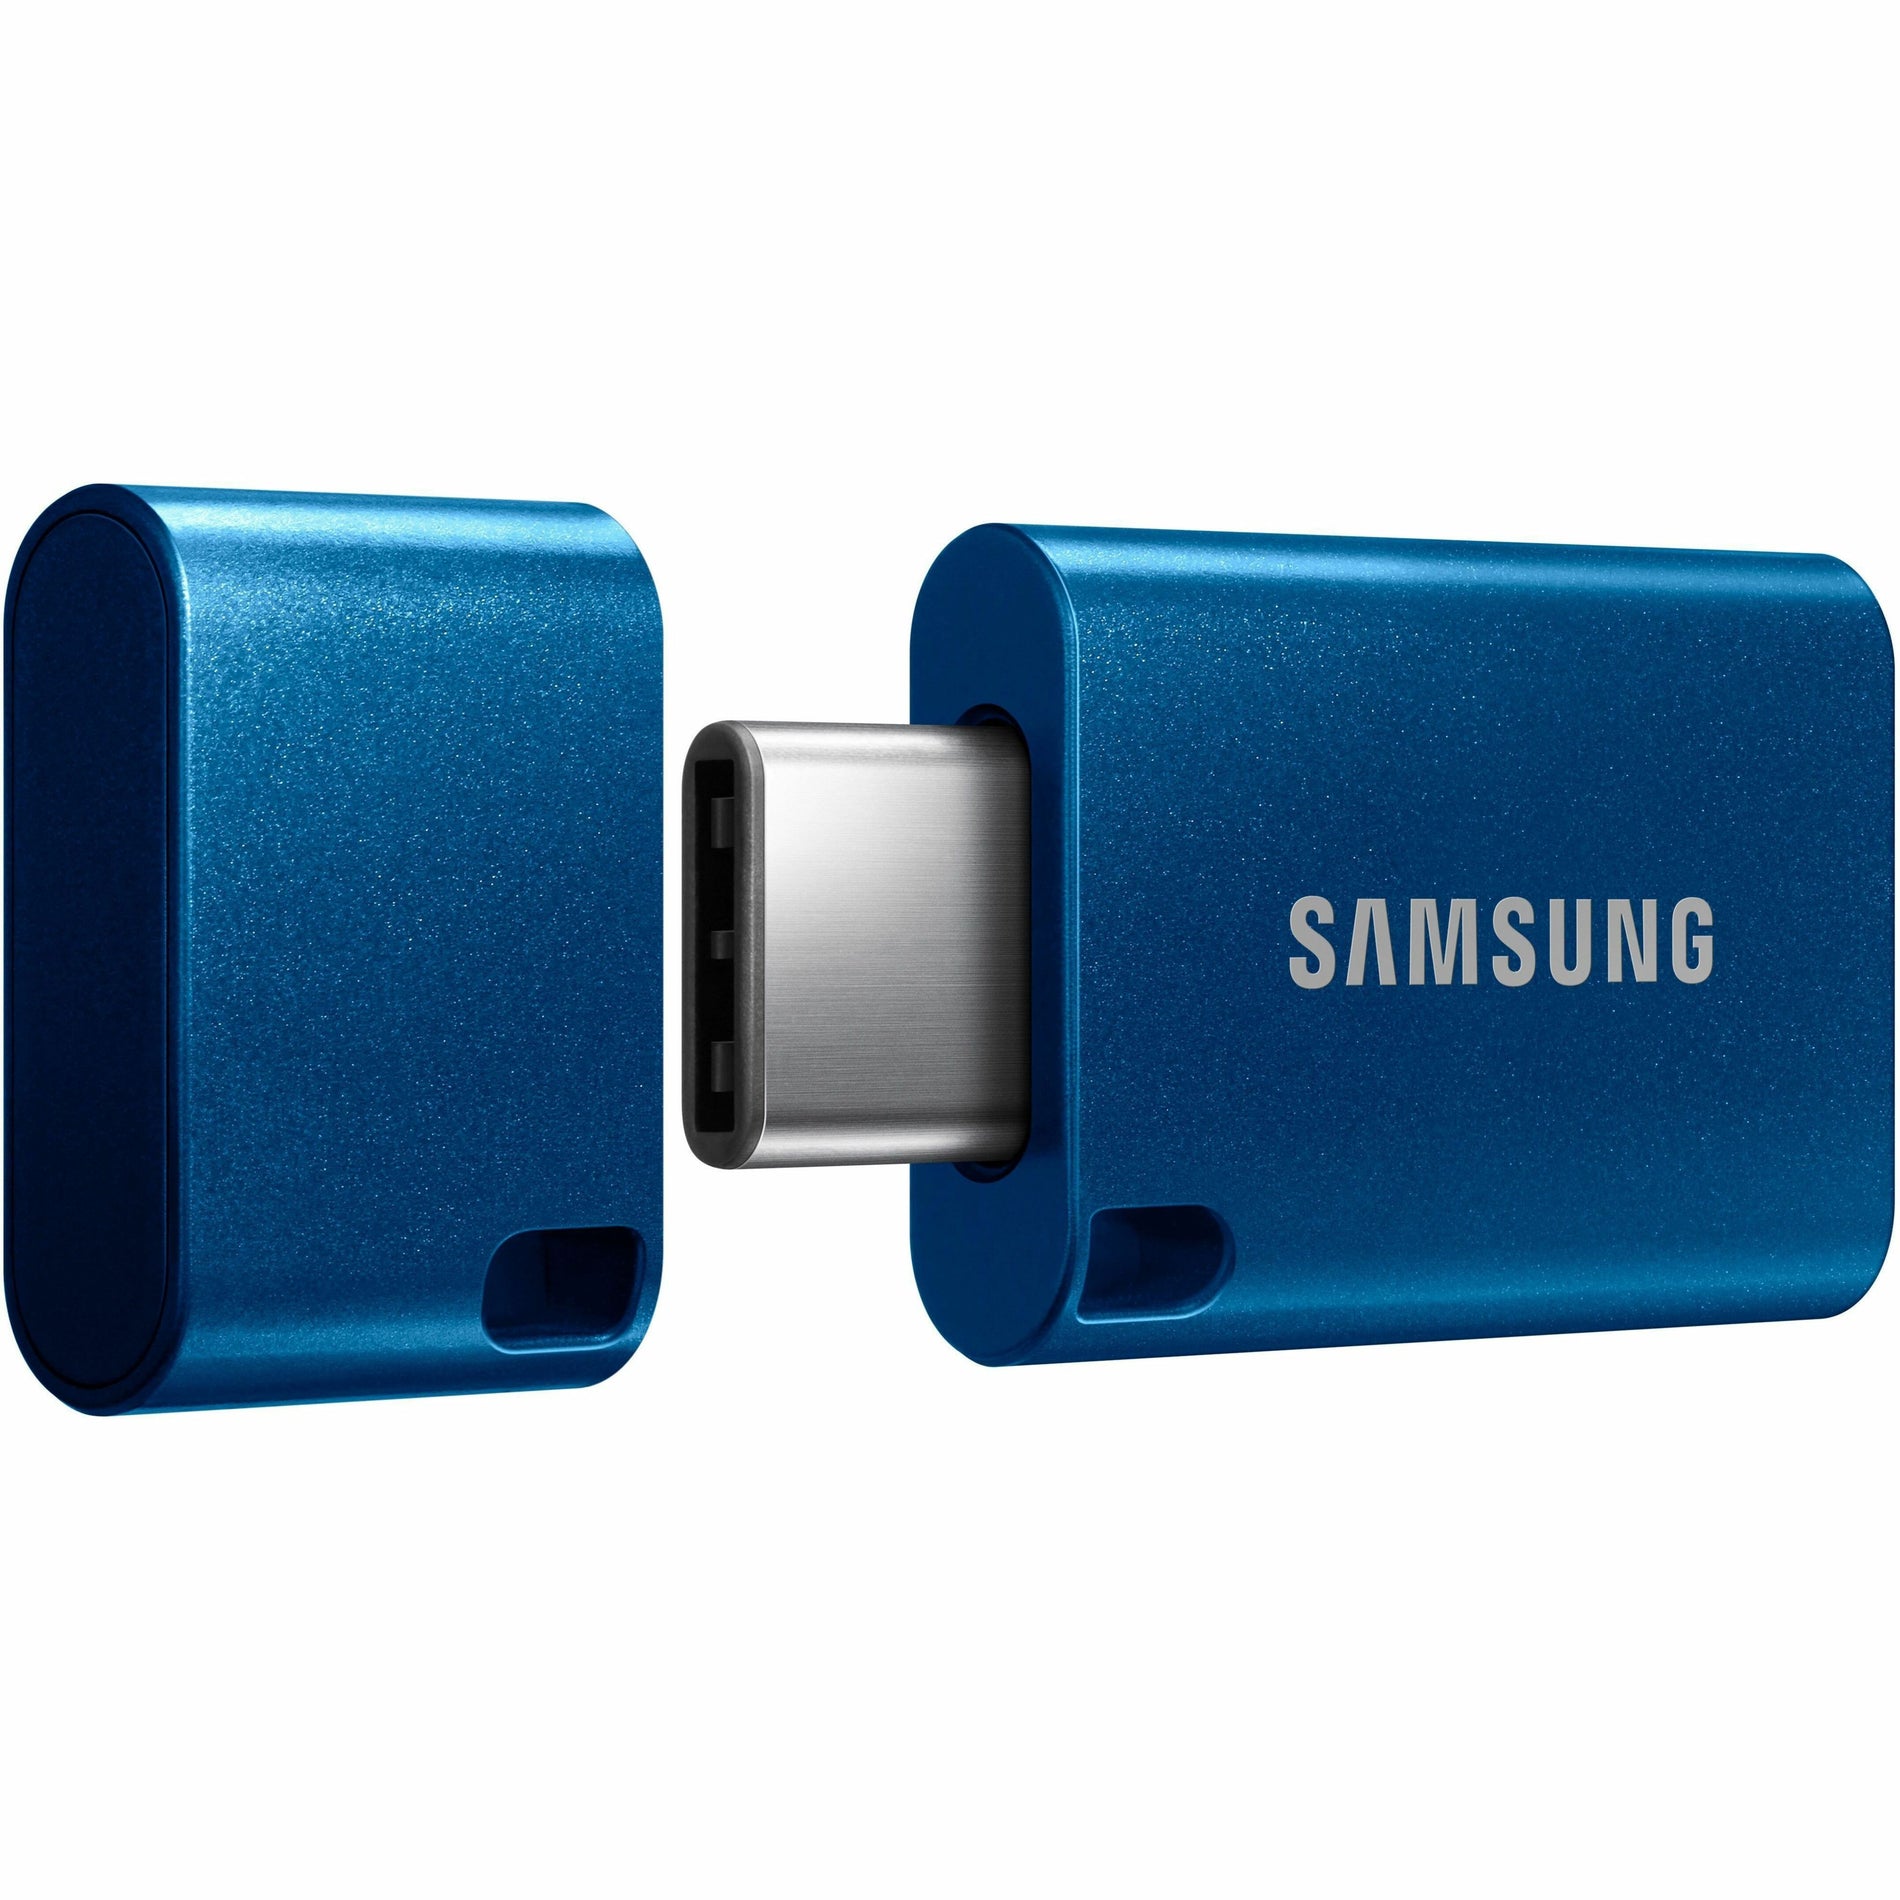 Samsung USB Type-C Flash Drive 128GB (MUF-128DA/AM)